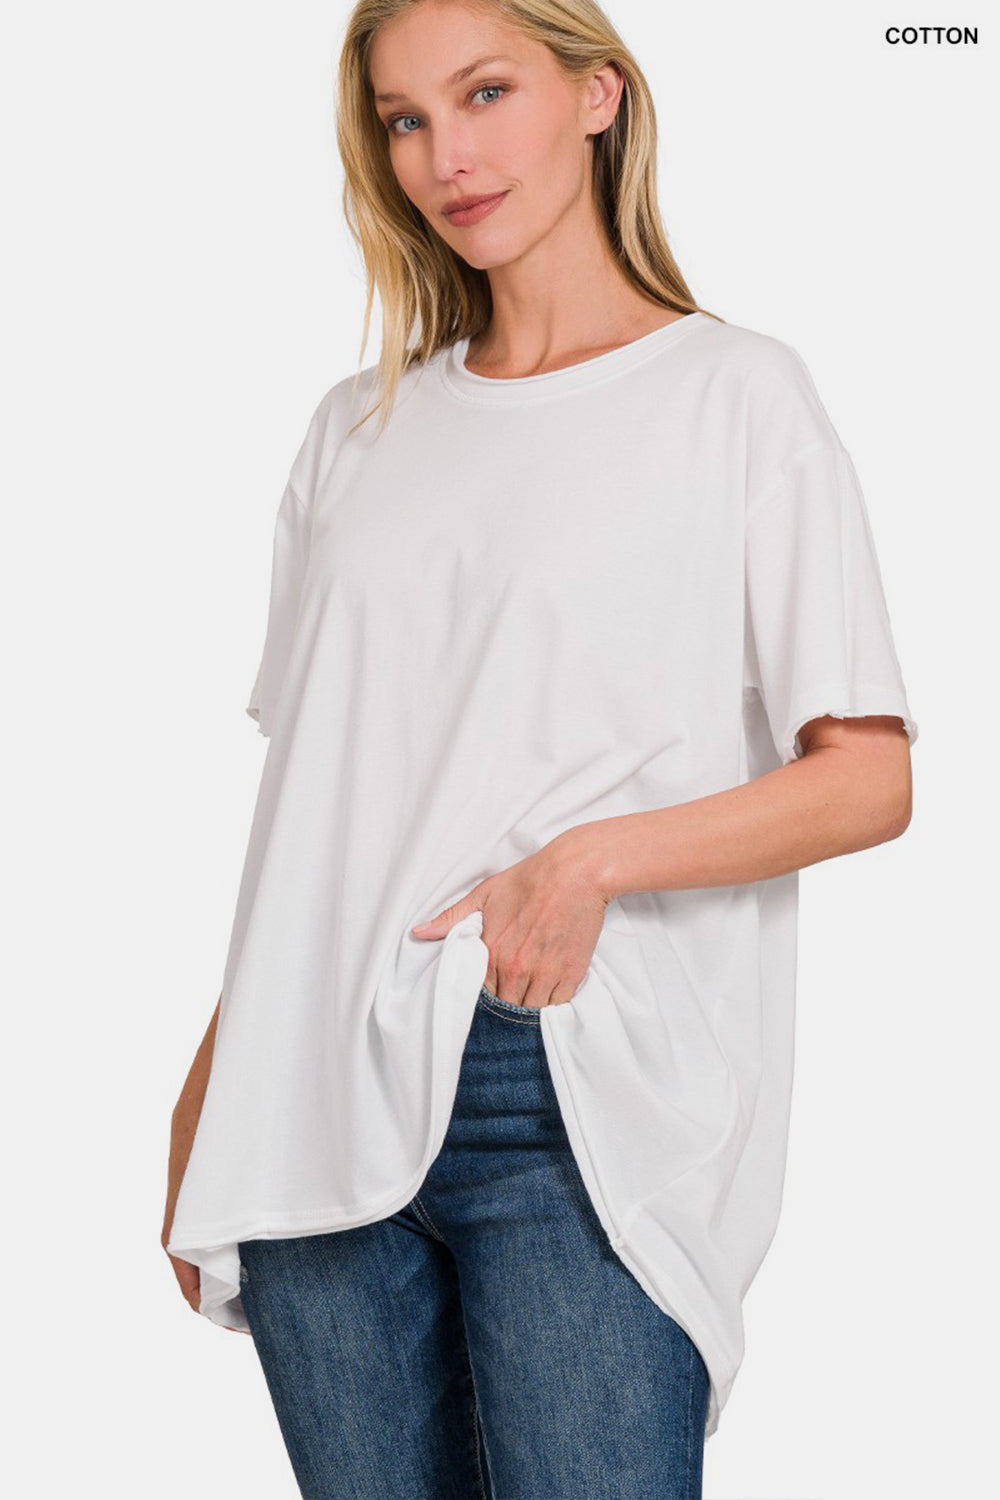 Zenana – Kurzärmliges T-Shirt mit Rundhalsausschnitt